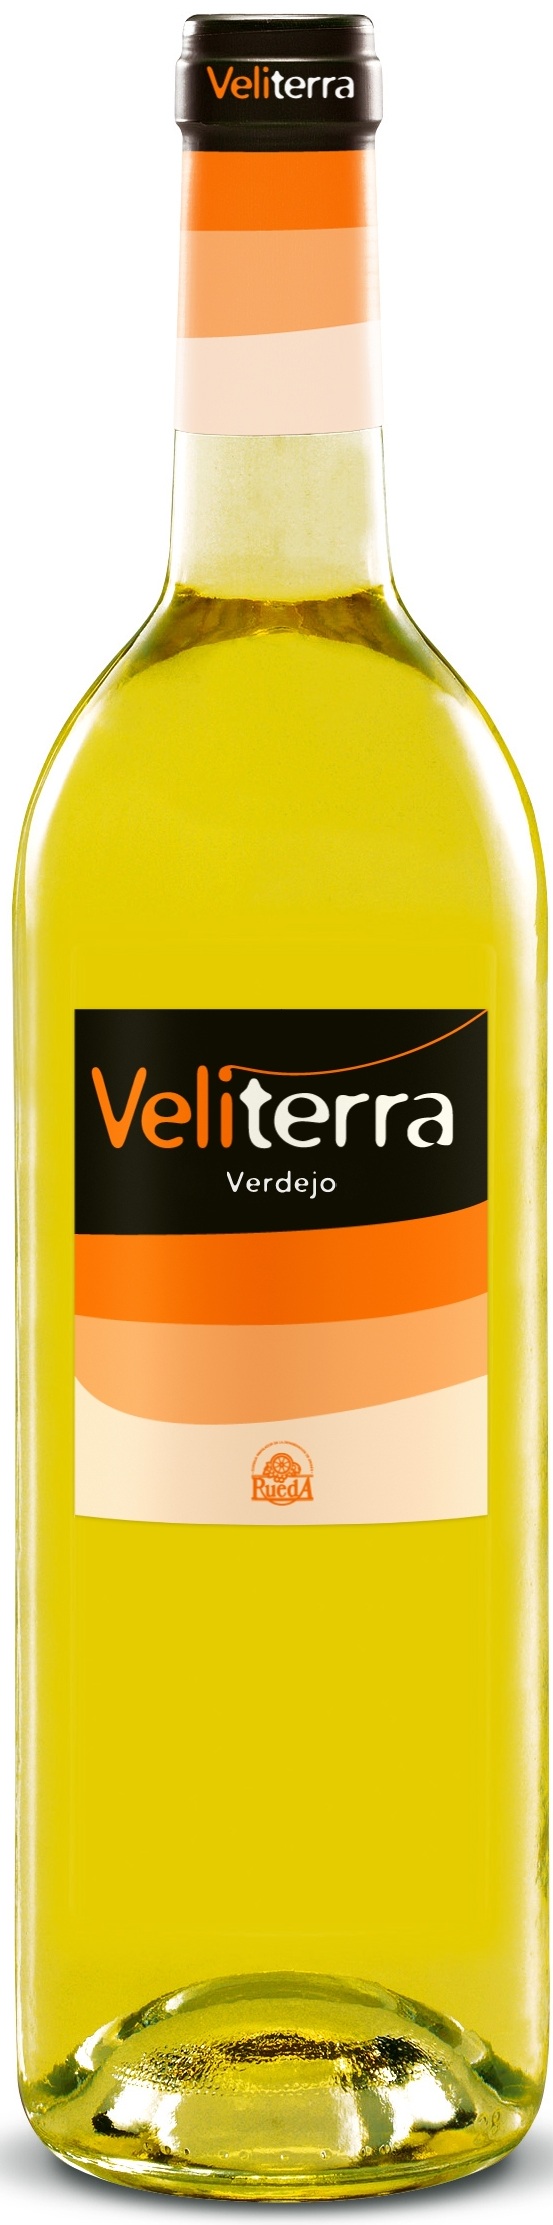 Logo del vino Veliterra